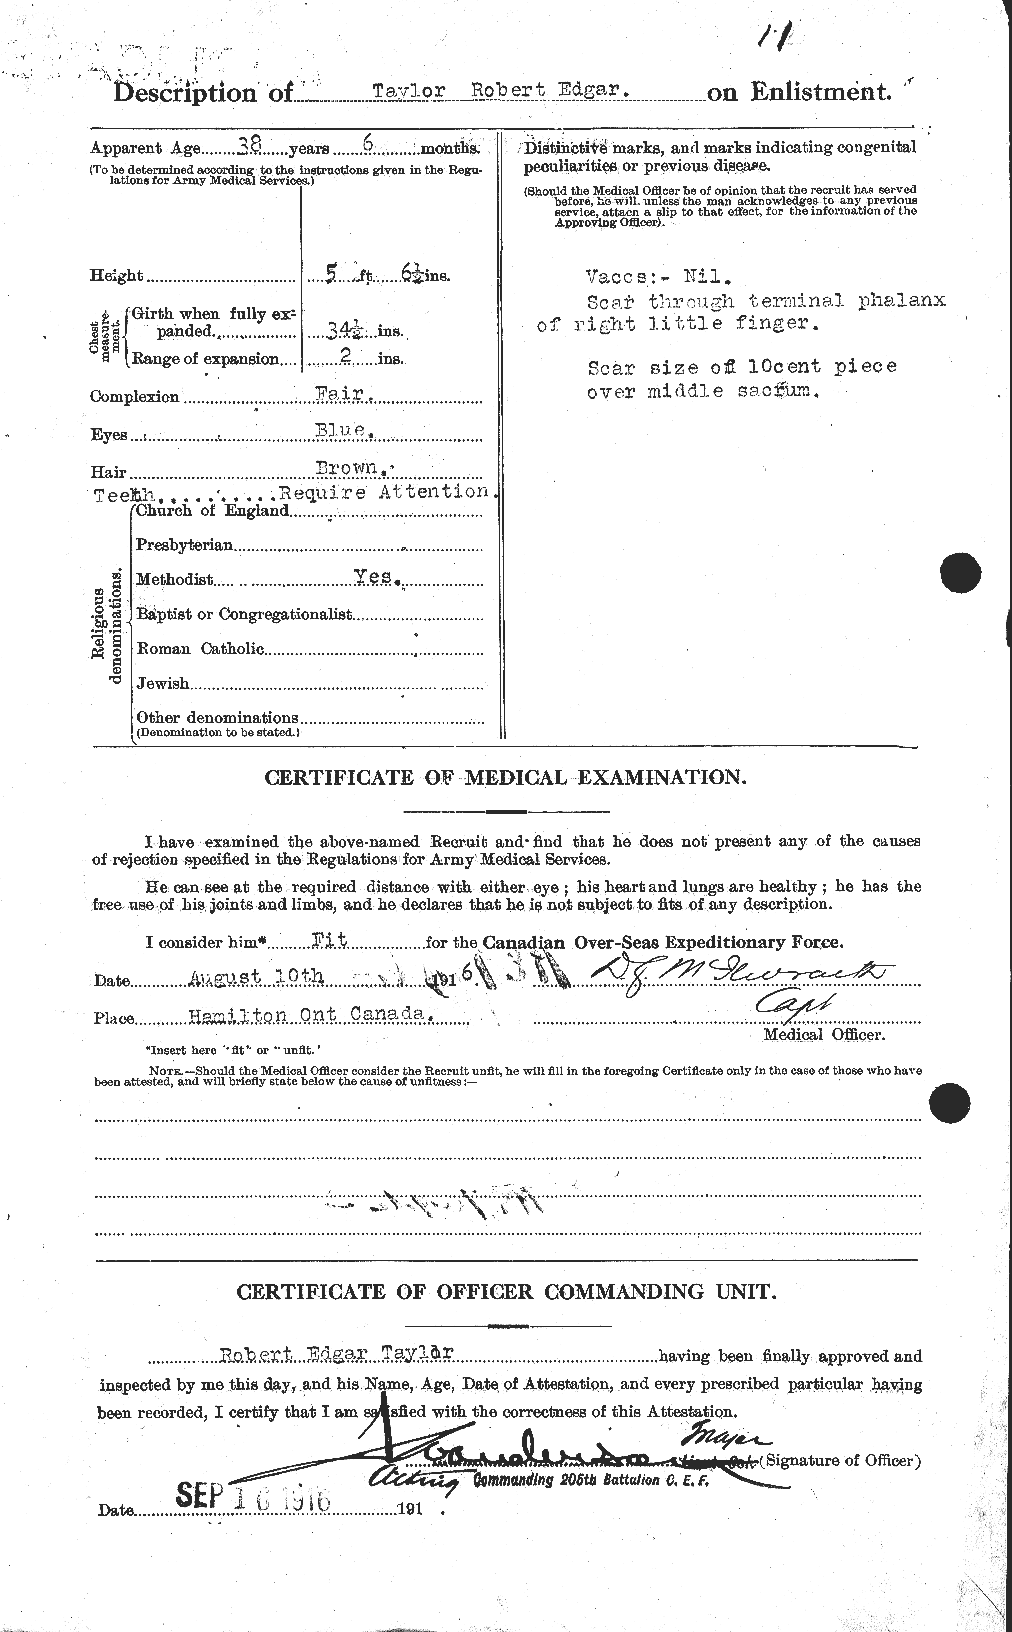 Dossiers du Personnel de la Première Guerre mondiale - CEC 627472b